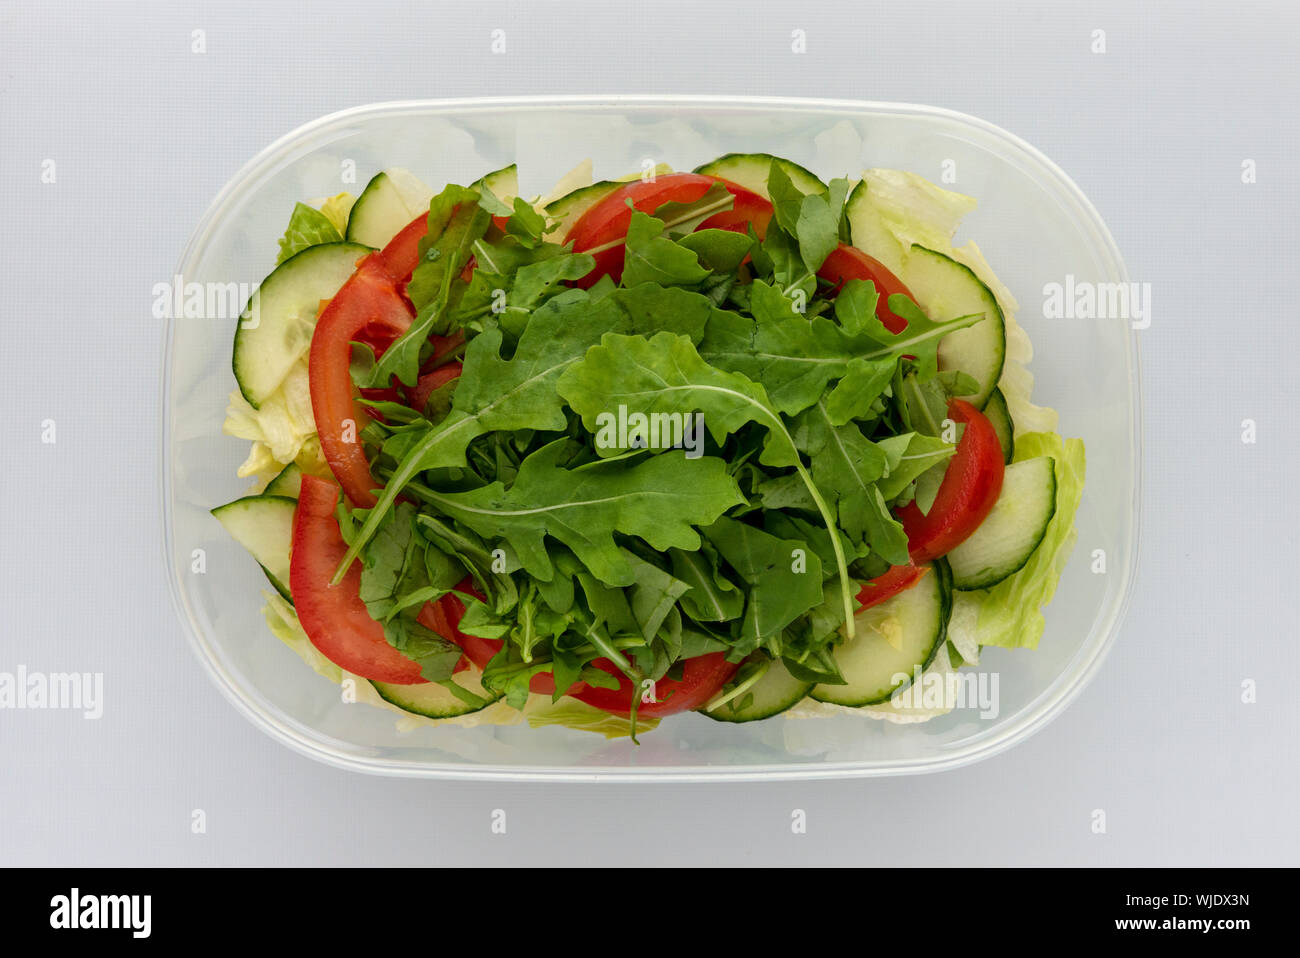 Blick von oben auf die hausgemachte geschichteten Salat in Plastik Schüssel auf weiße Oberfläche. Tomaten Gurken Rakete Blätter Eisbergsalat von oben. Stockfoto